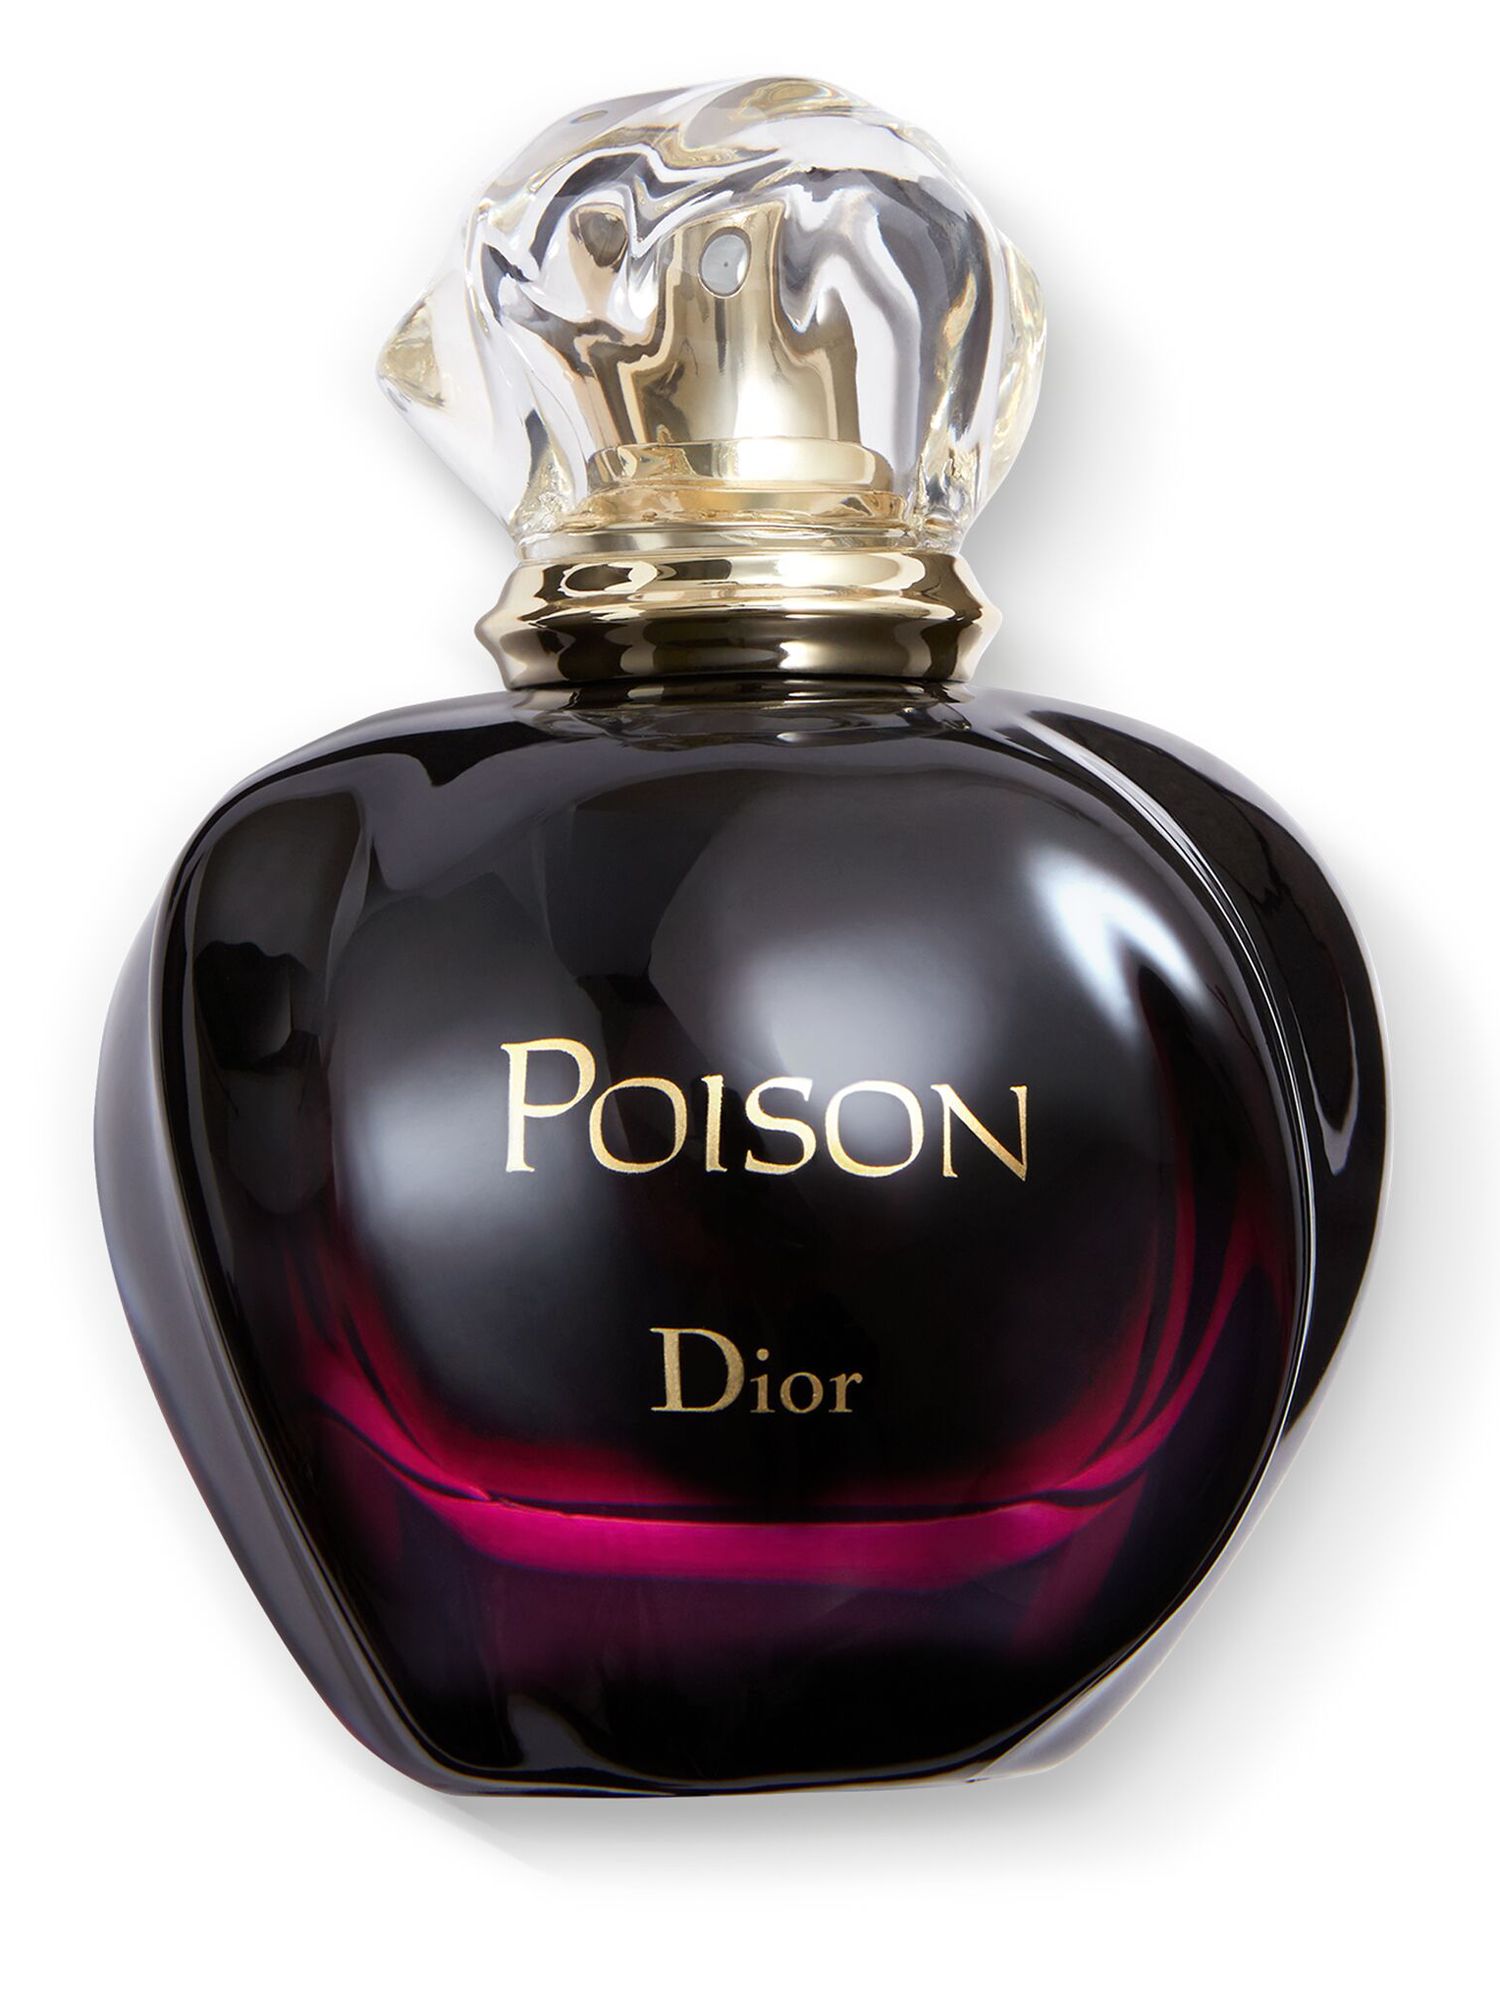 DIOR Pure Poison Eau de Parfum Spray, 30ml at John Lewis & Partners